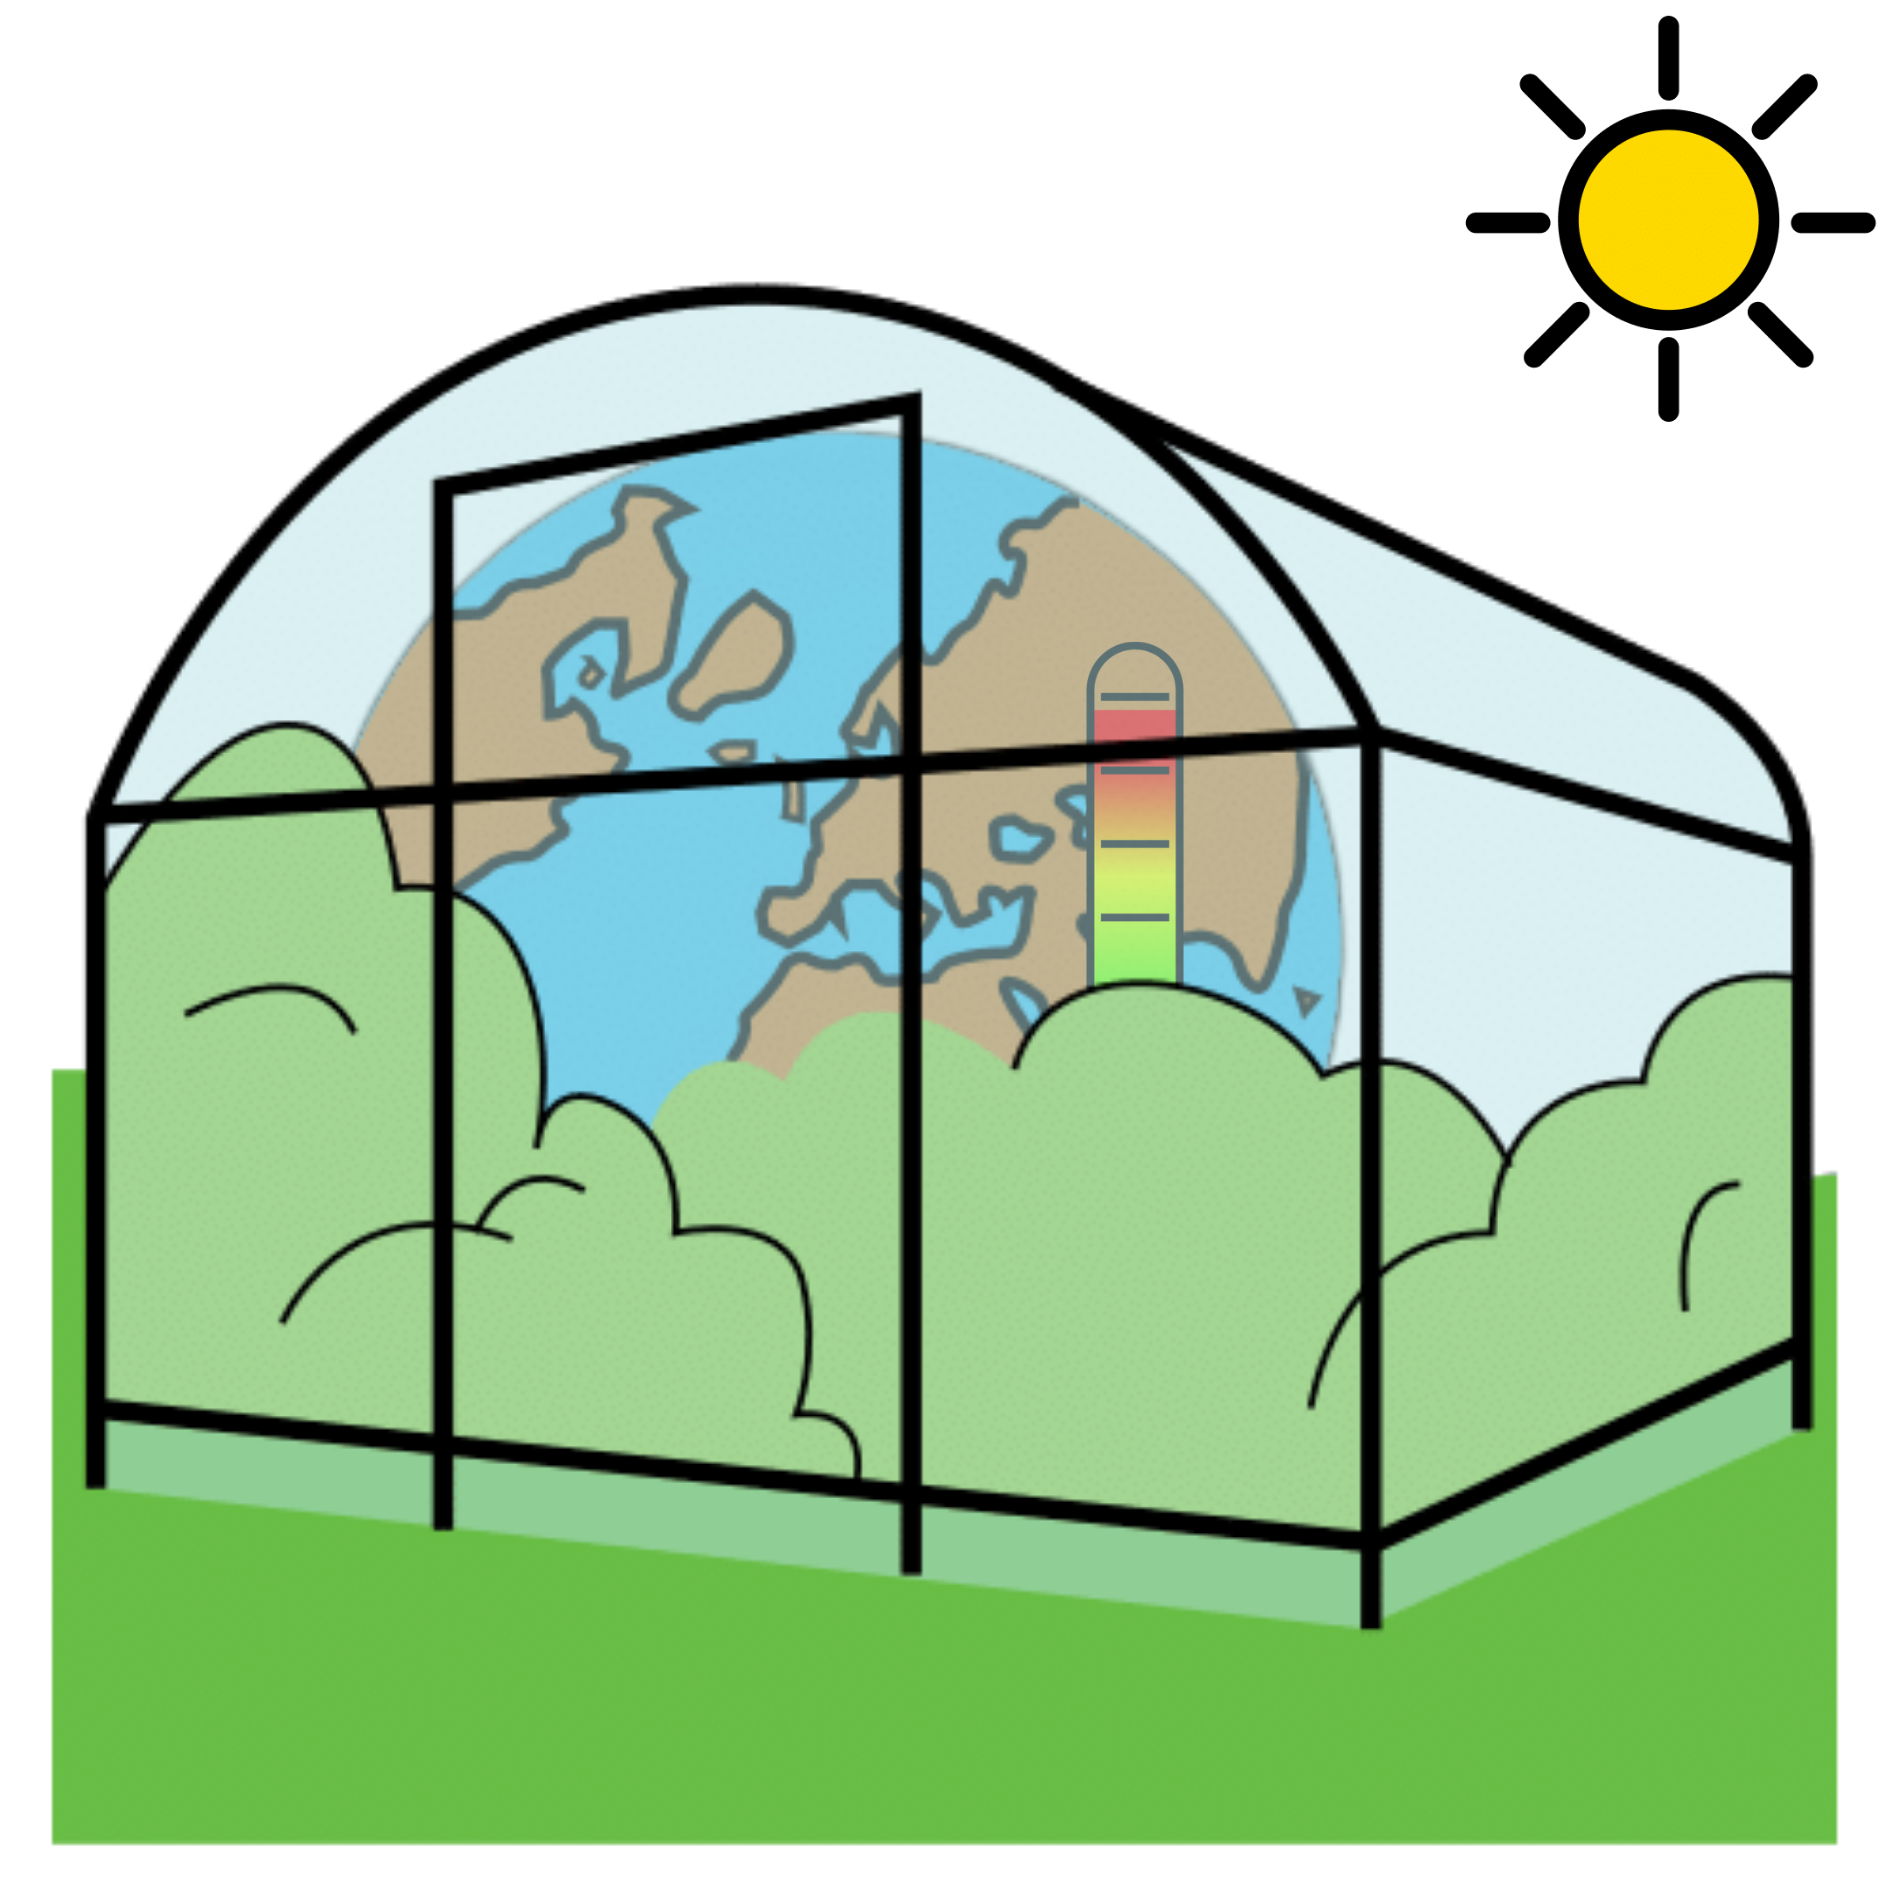 Dibujo de un invernadero con el planeta Tierra dentro y un termómetro en rojo que representa el calentamiento del planeta por el efecto invernadero